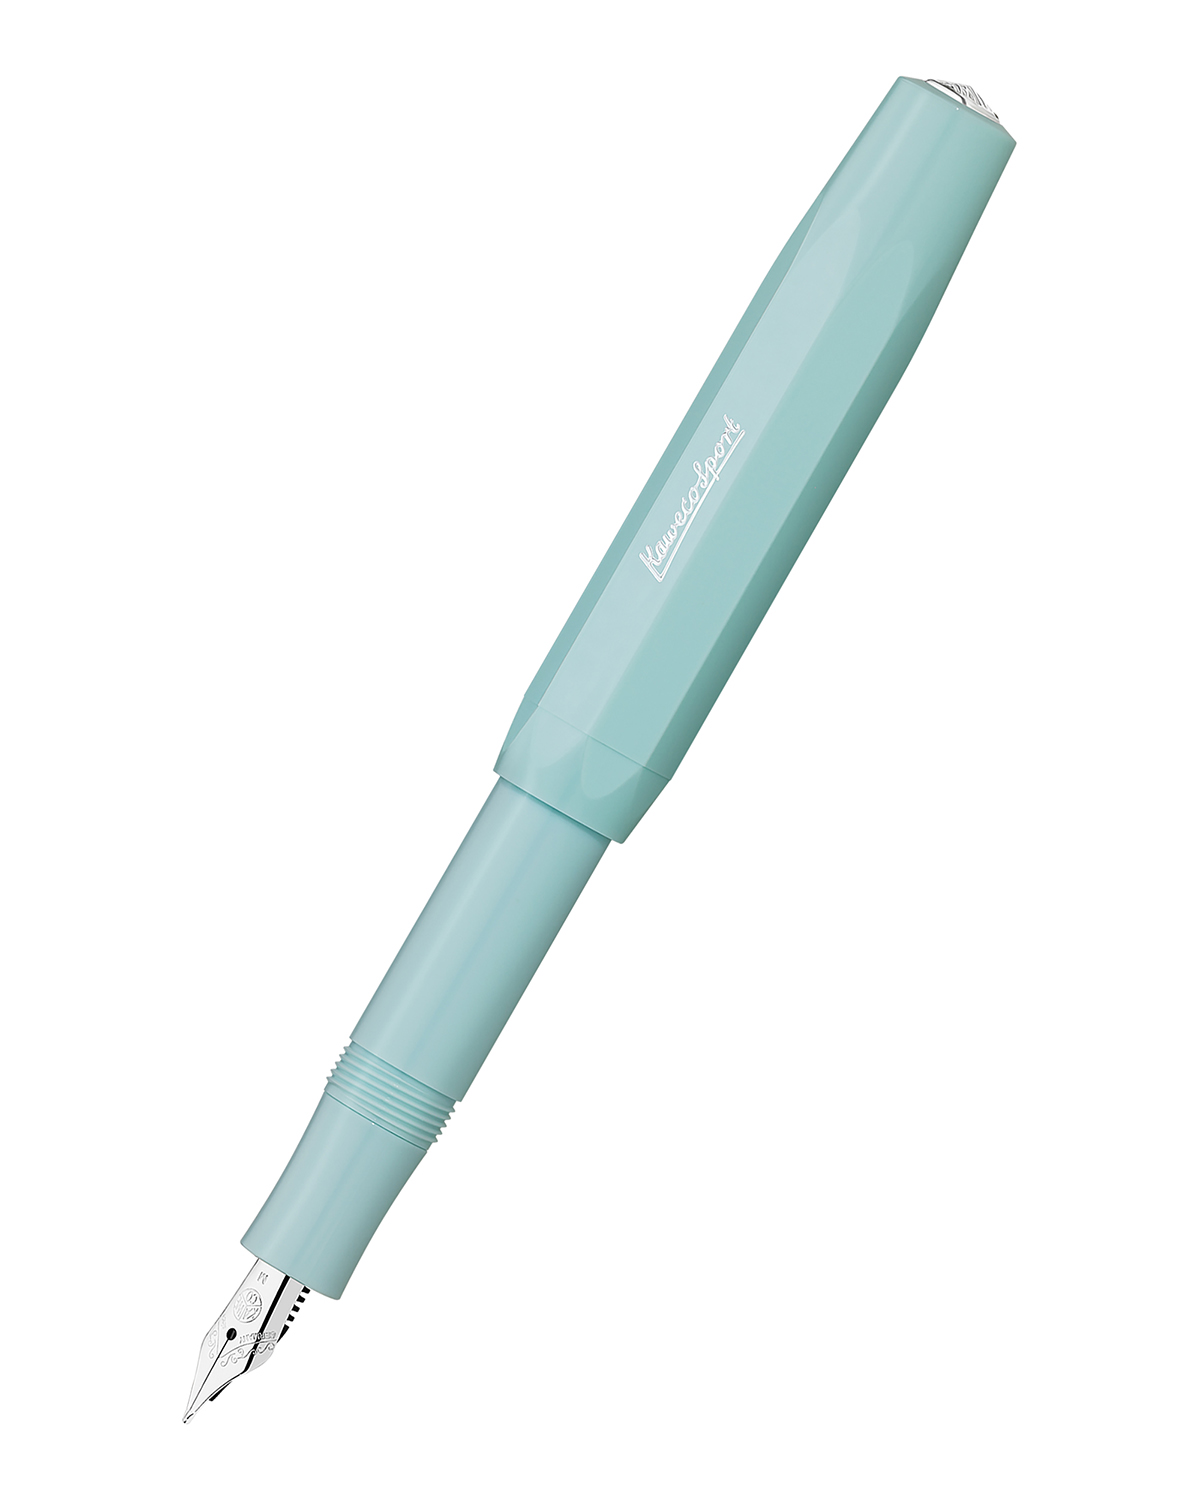 Перьевая ручка Kaweco Skyline Sport мятная синие чернила M 09 мм